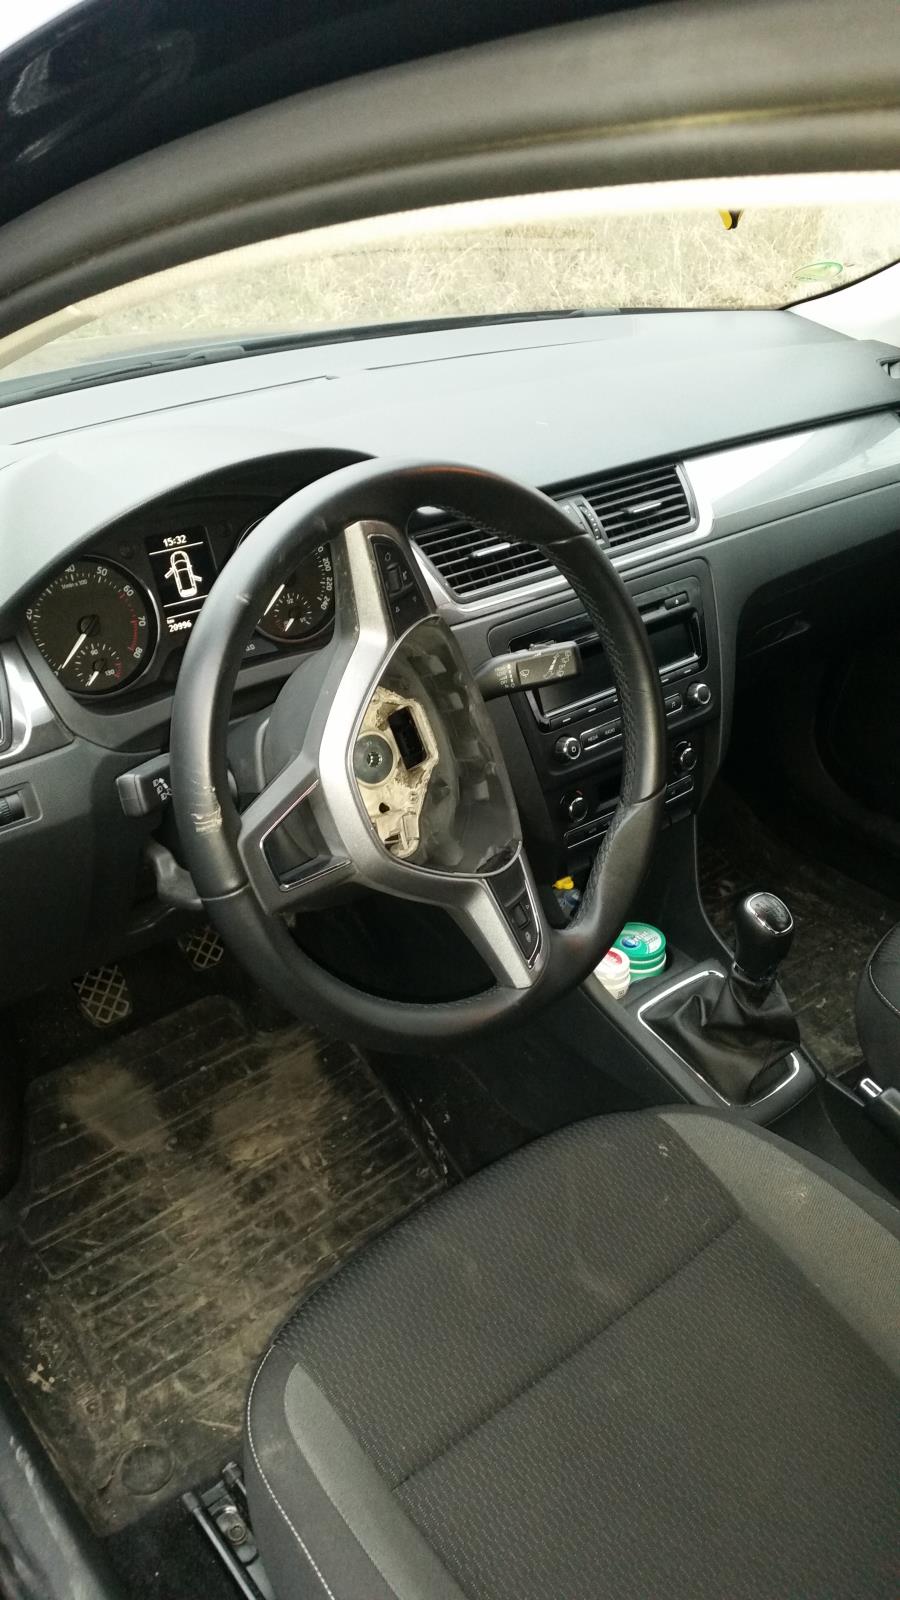 1 Odcizený airbag.jpg